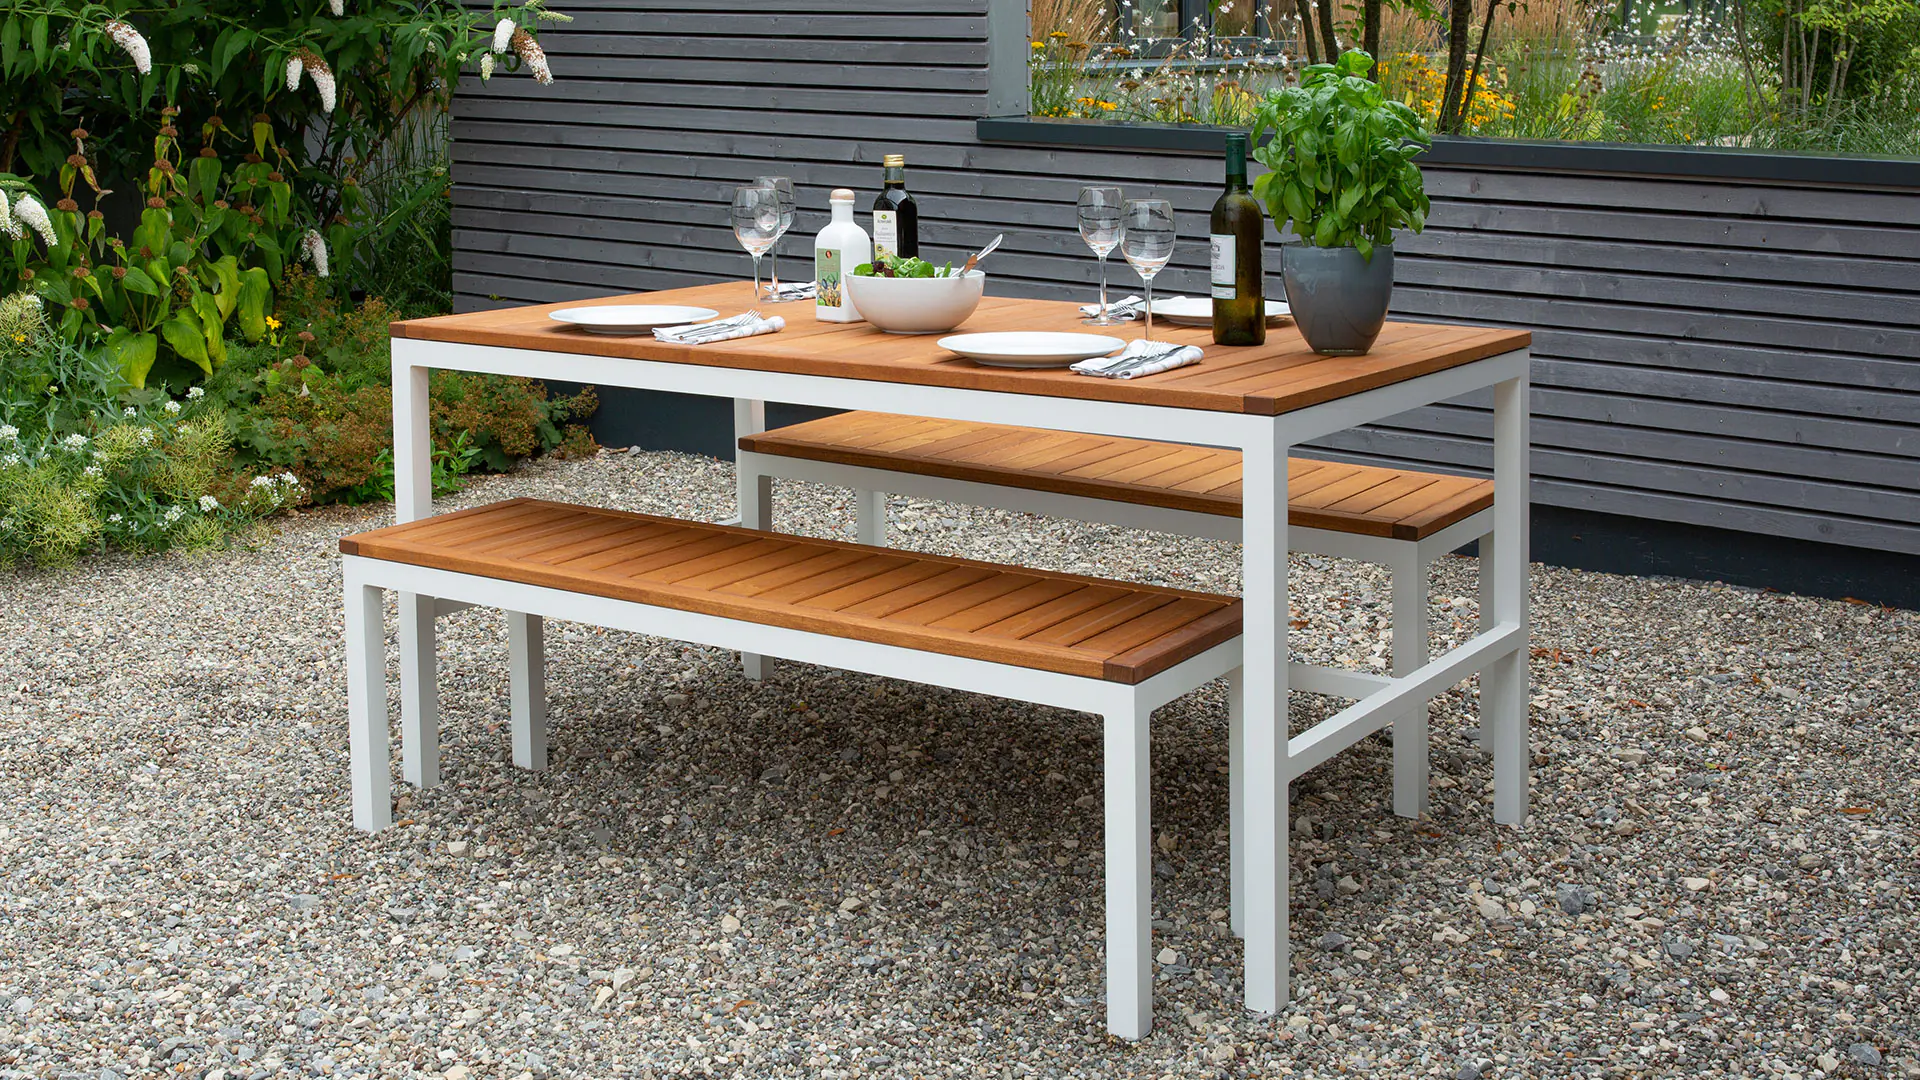 Cette table attrayante au mélange de matériaux modernes crée une ambiance méditerranéenne.